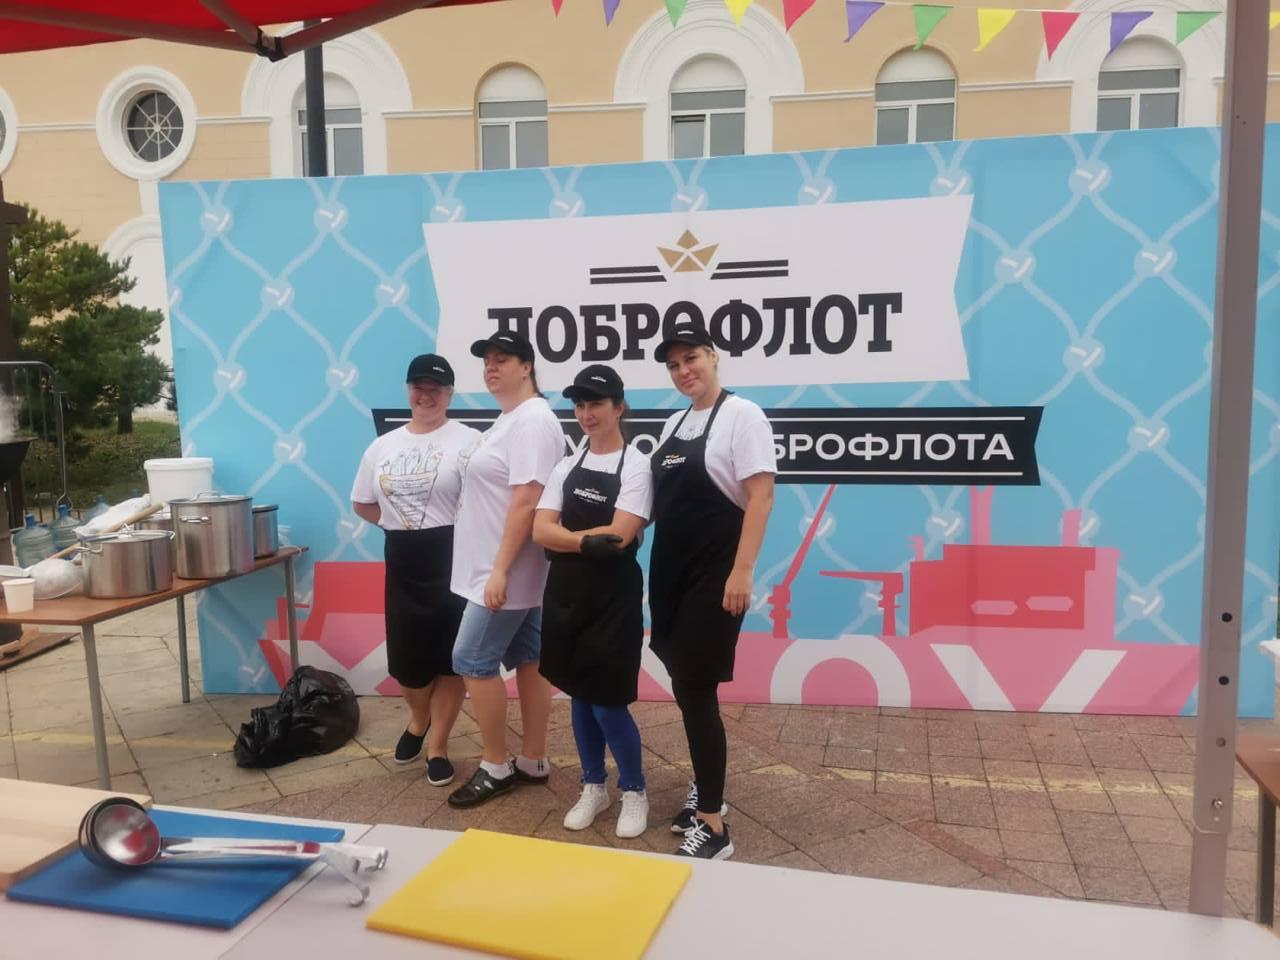 Вести Приморье: Почему за Добросупом огромные очереди. Всё просто - это народное блюдо. Репортаж из центра Владивостока.